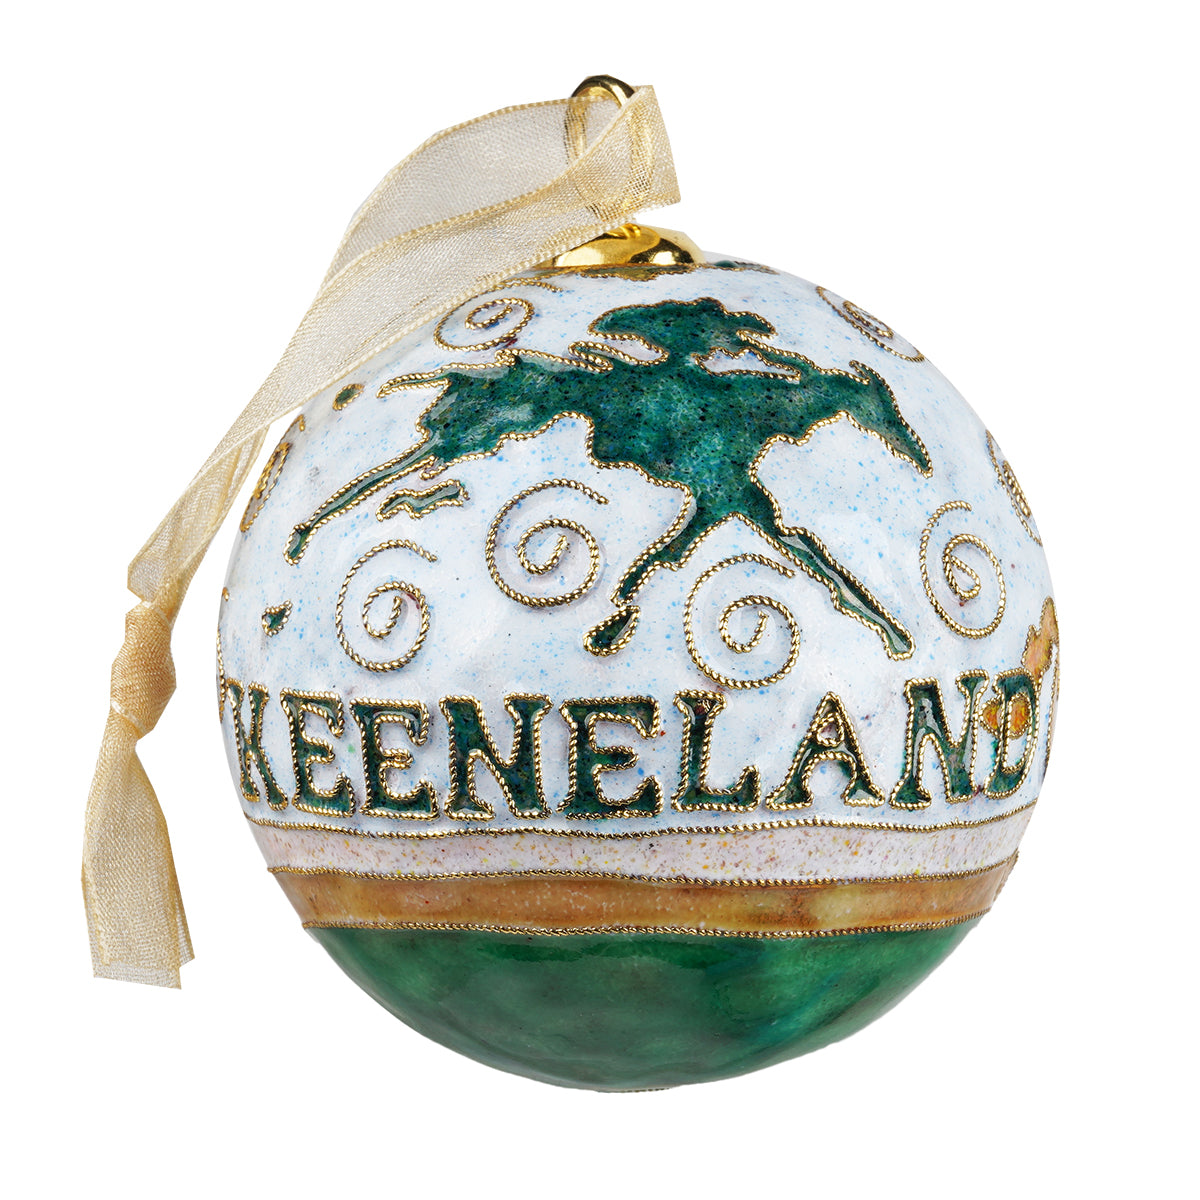 Kitty Keller Keeneland Starting Gate Ornament